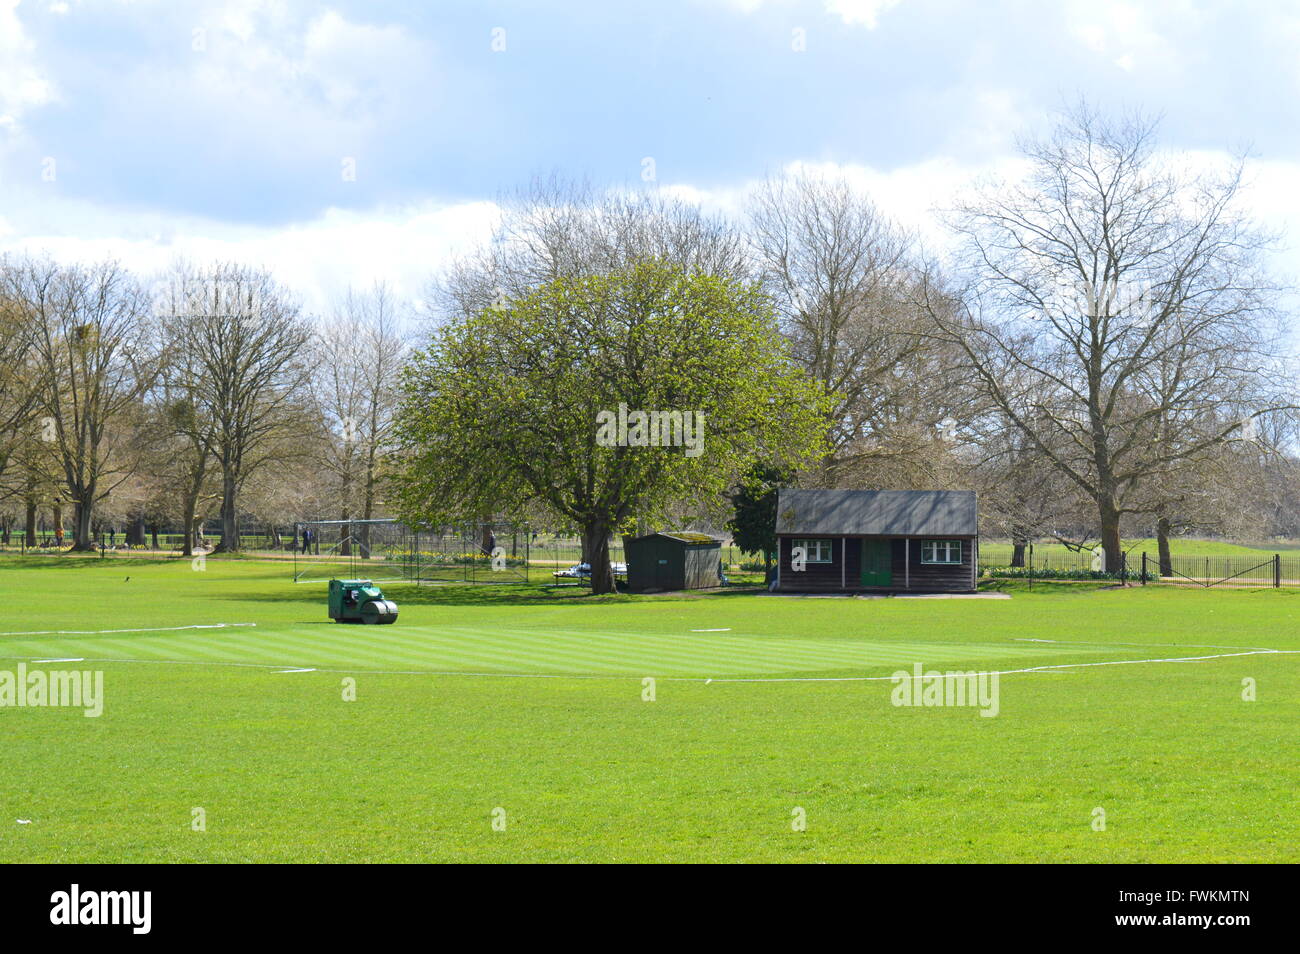 Terrain de cricket dans l'Université d'Oxford préparés et prêts pour la saison. un petit pavillon traditionnel. Banque D'Images